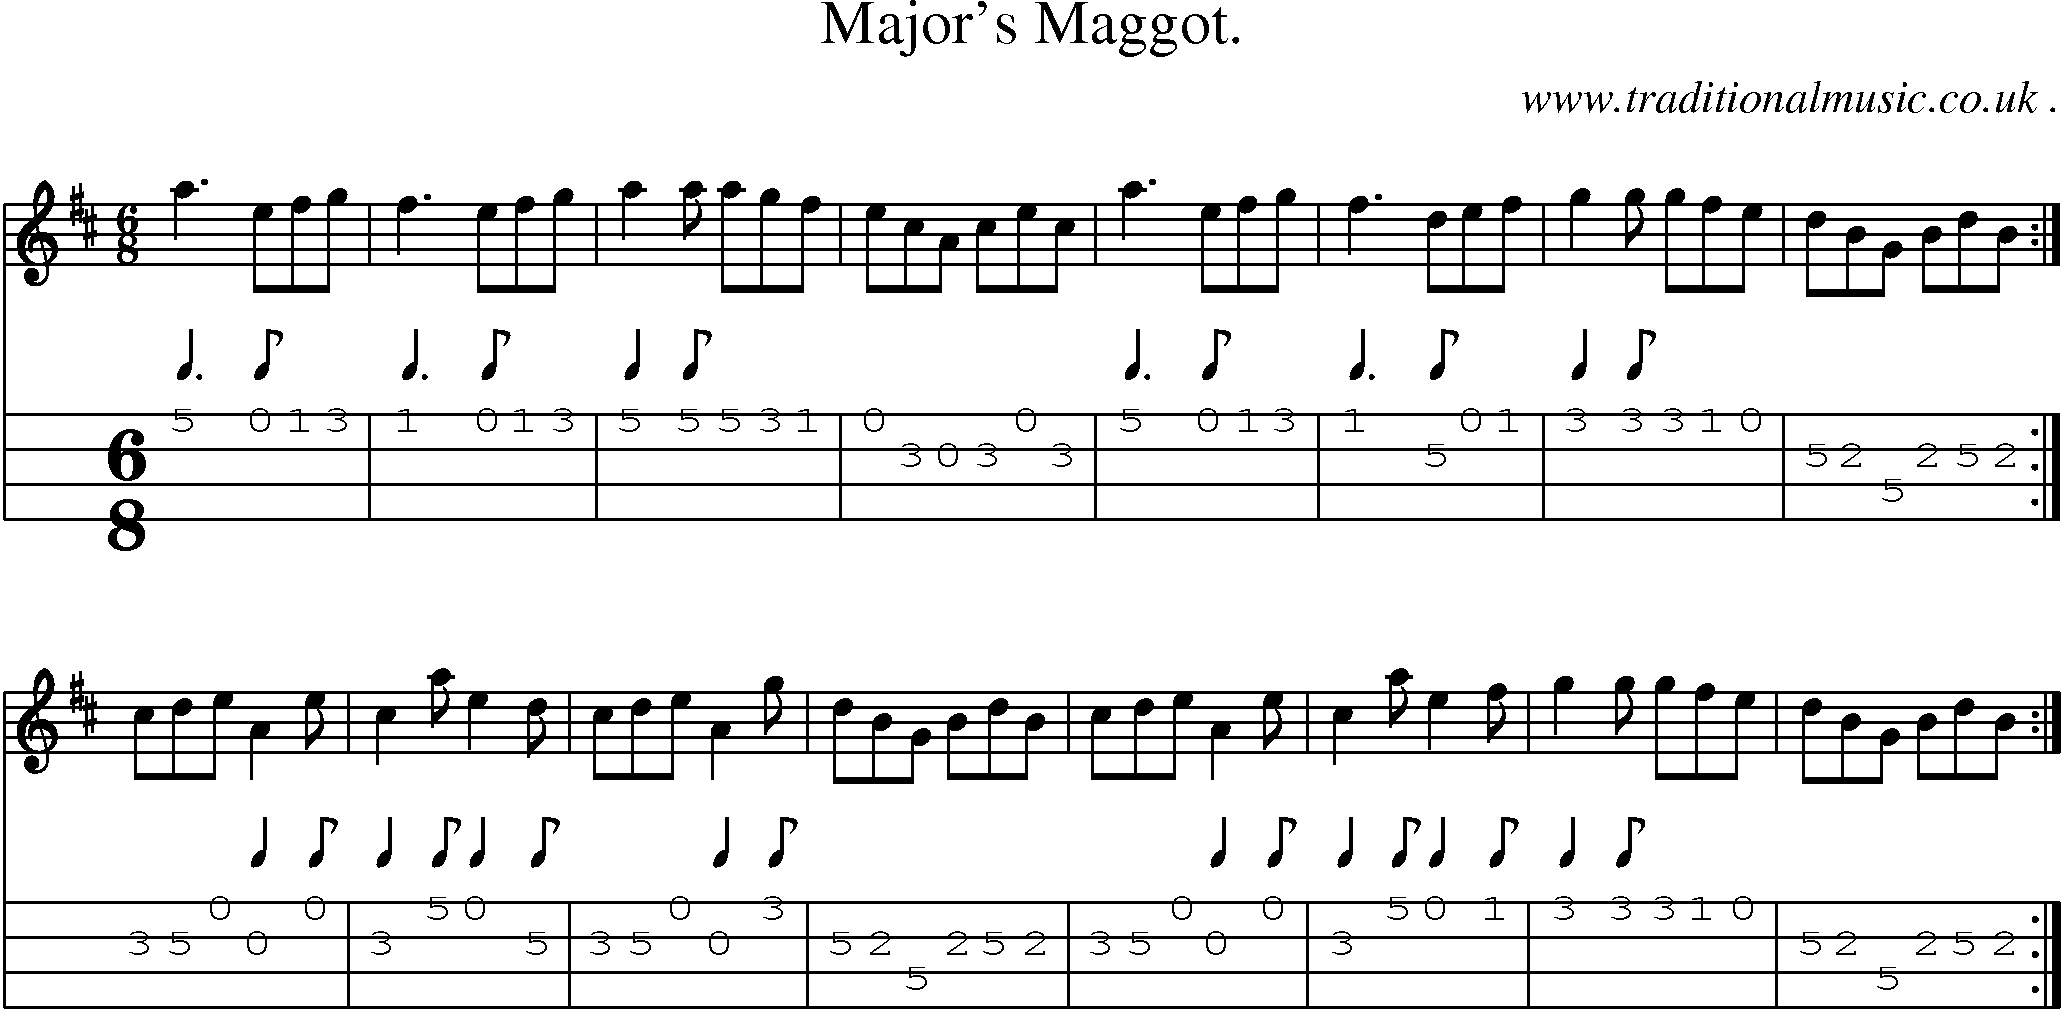 Sheet-Music and Mandolin Tabs for Majors Maggot